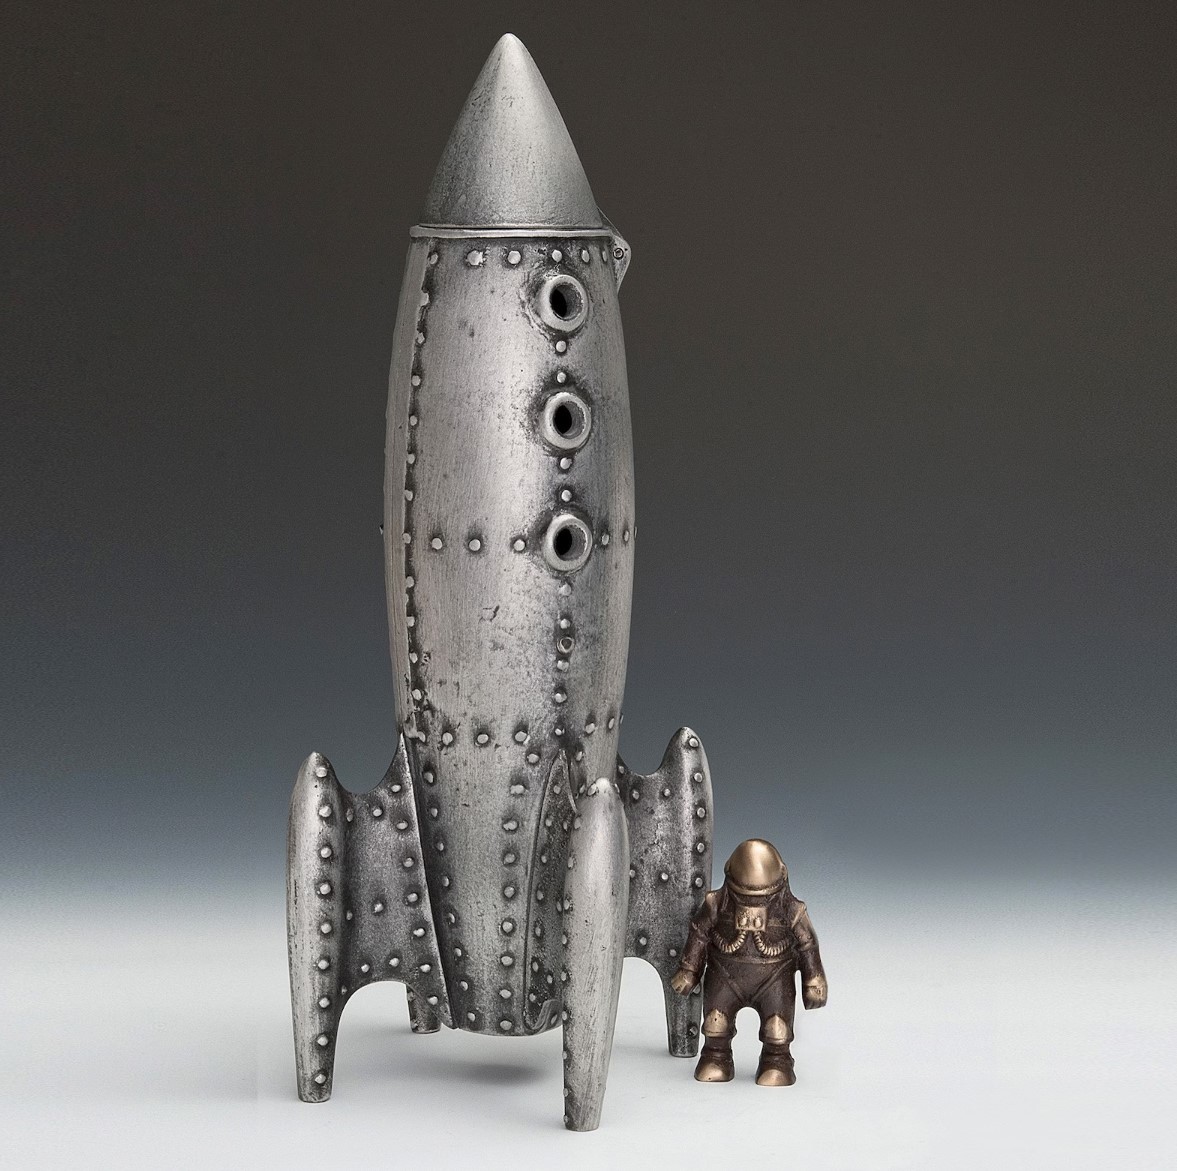 Figura cohete lunar y astronauta., hecho de metal por un artista, Artículos hechos a mano, interior, bienes varios, ornamento, objeto